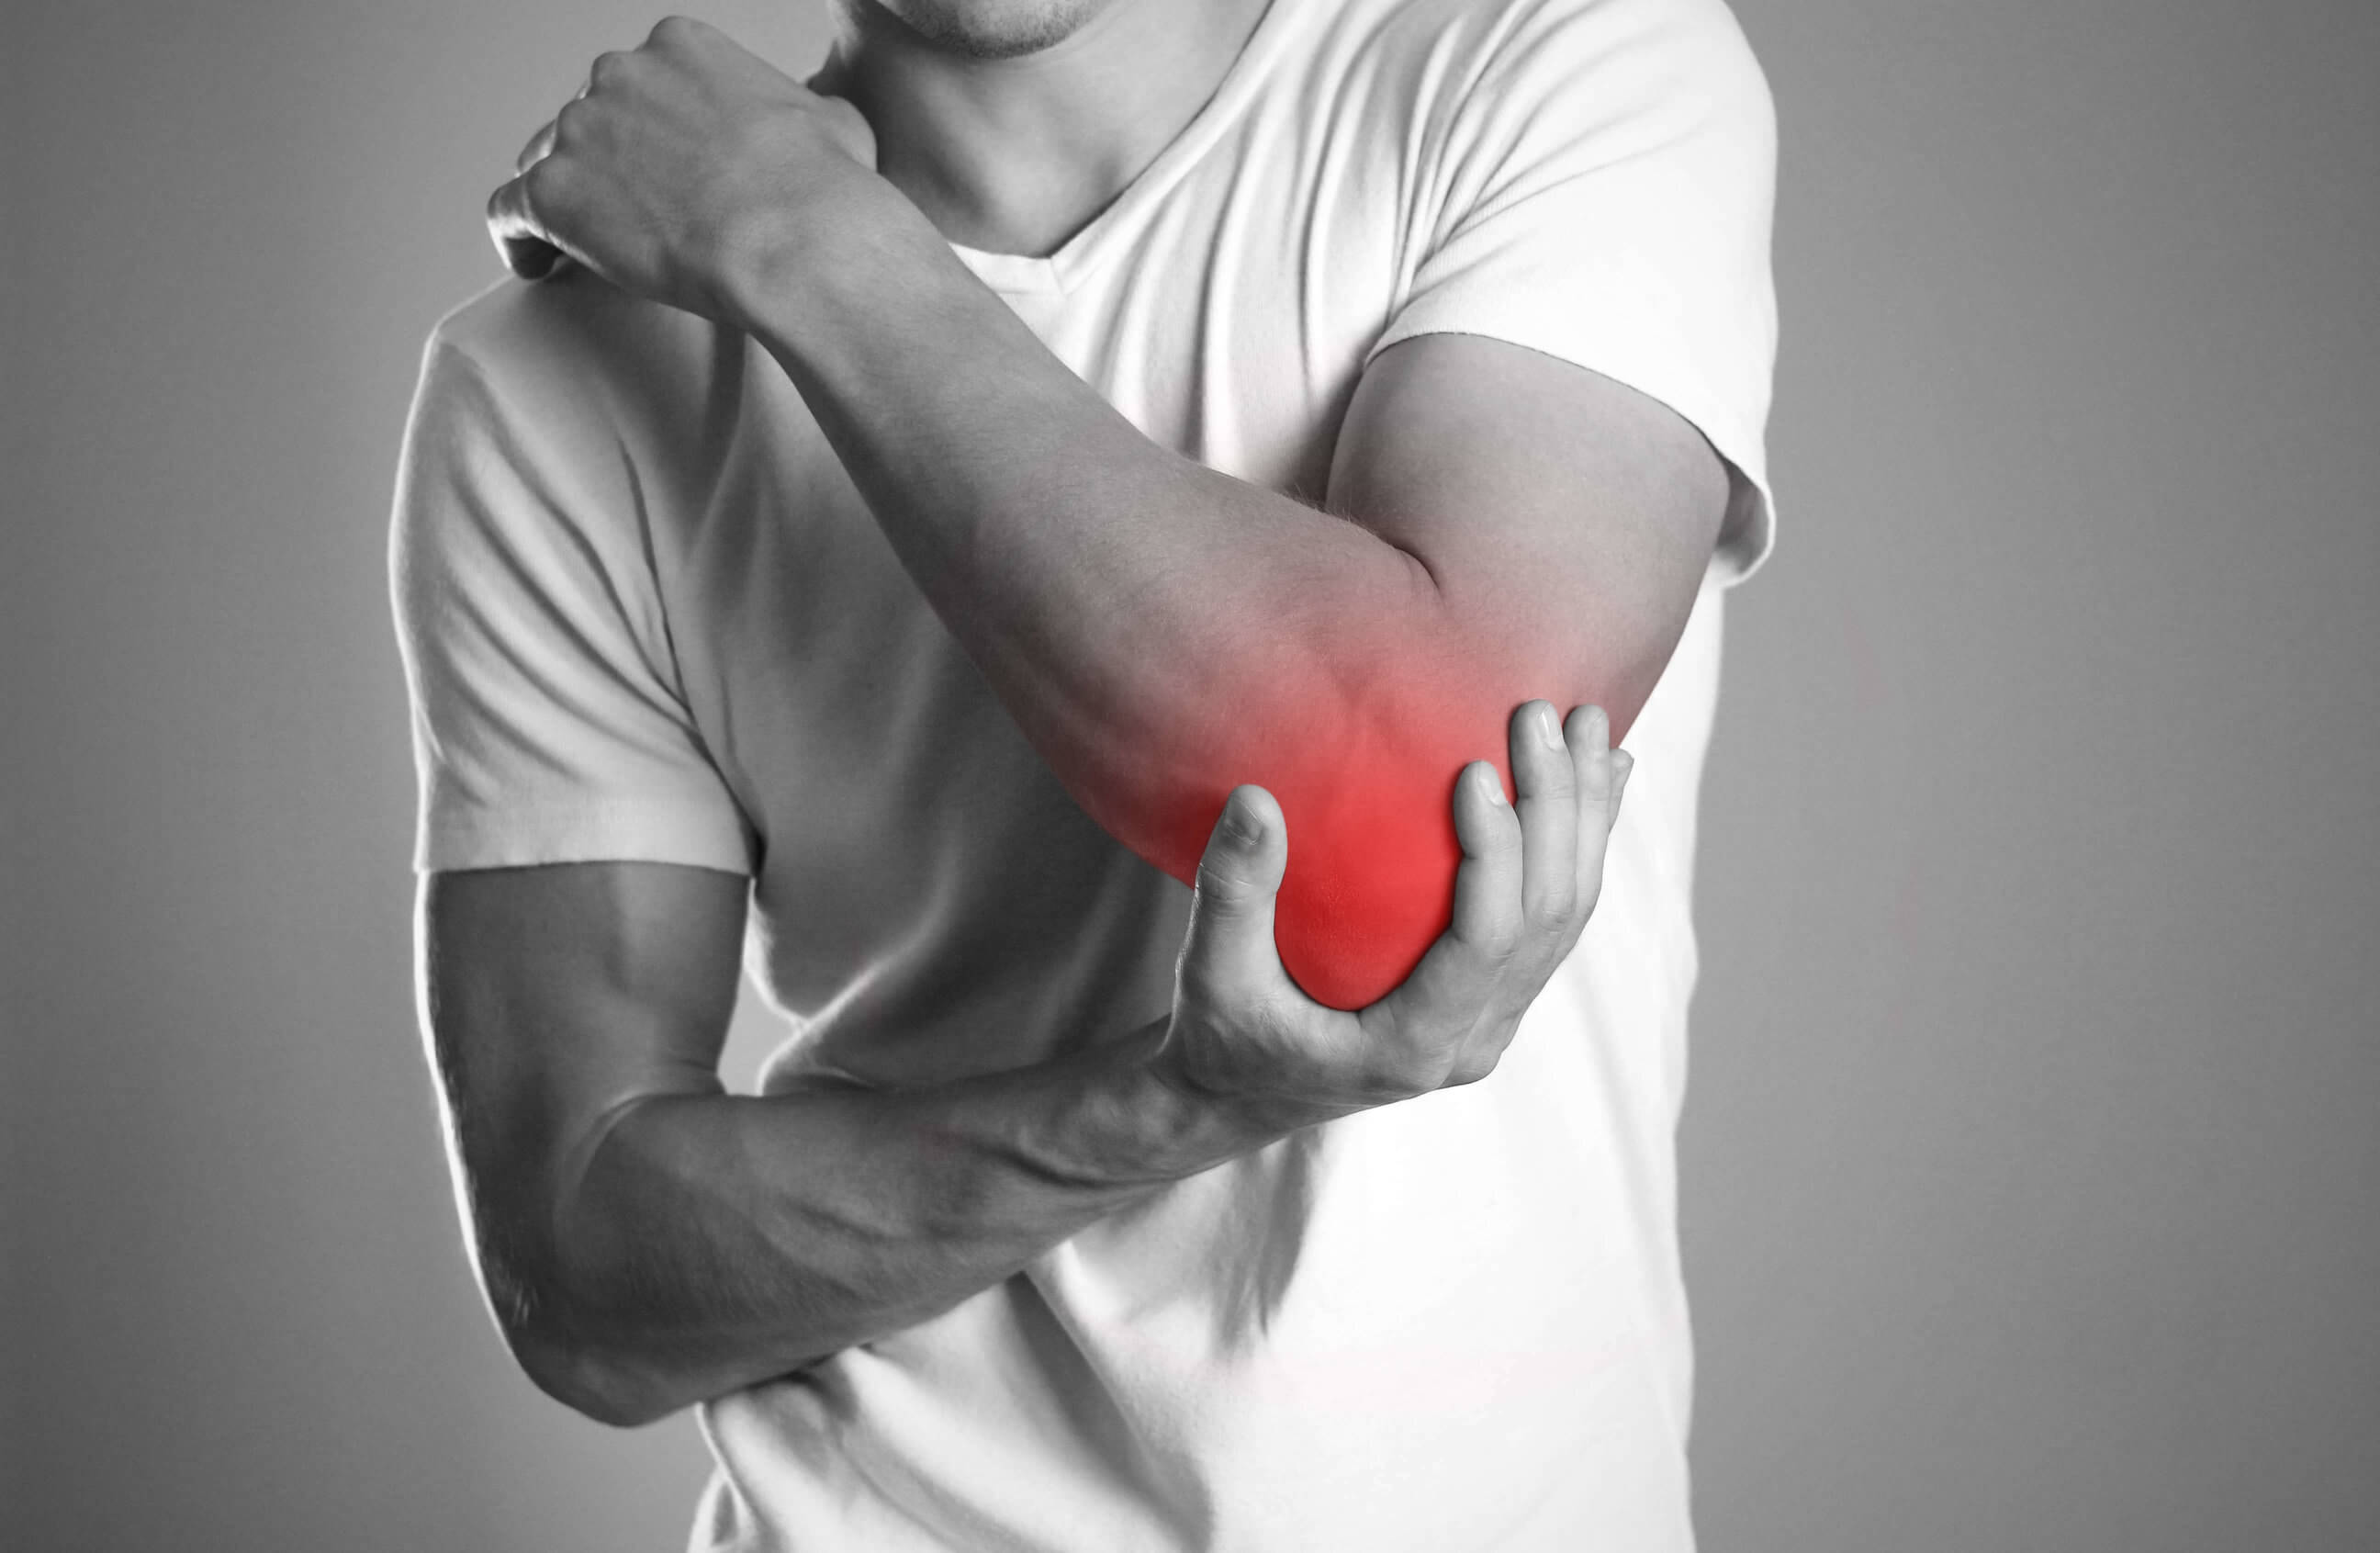 Лечение ноющей боли в руках. Elbow Pain. Человек держится за локоть. Боль в руке.